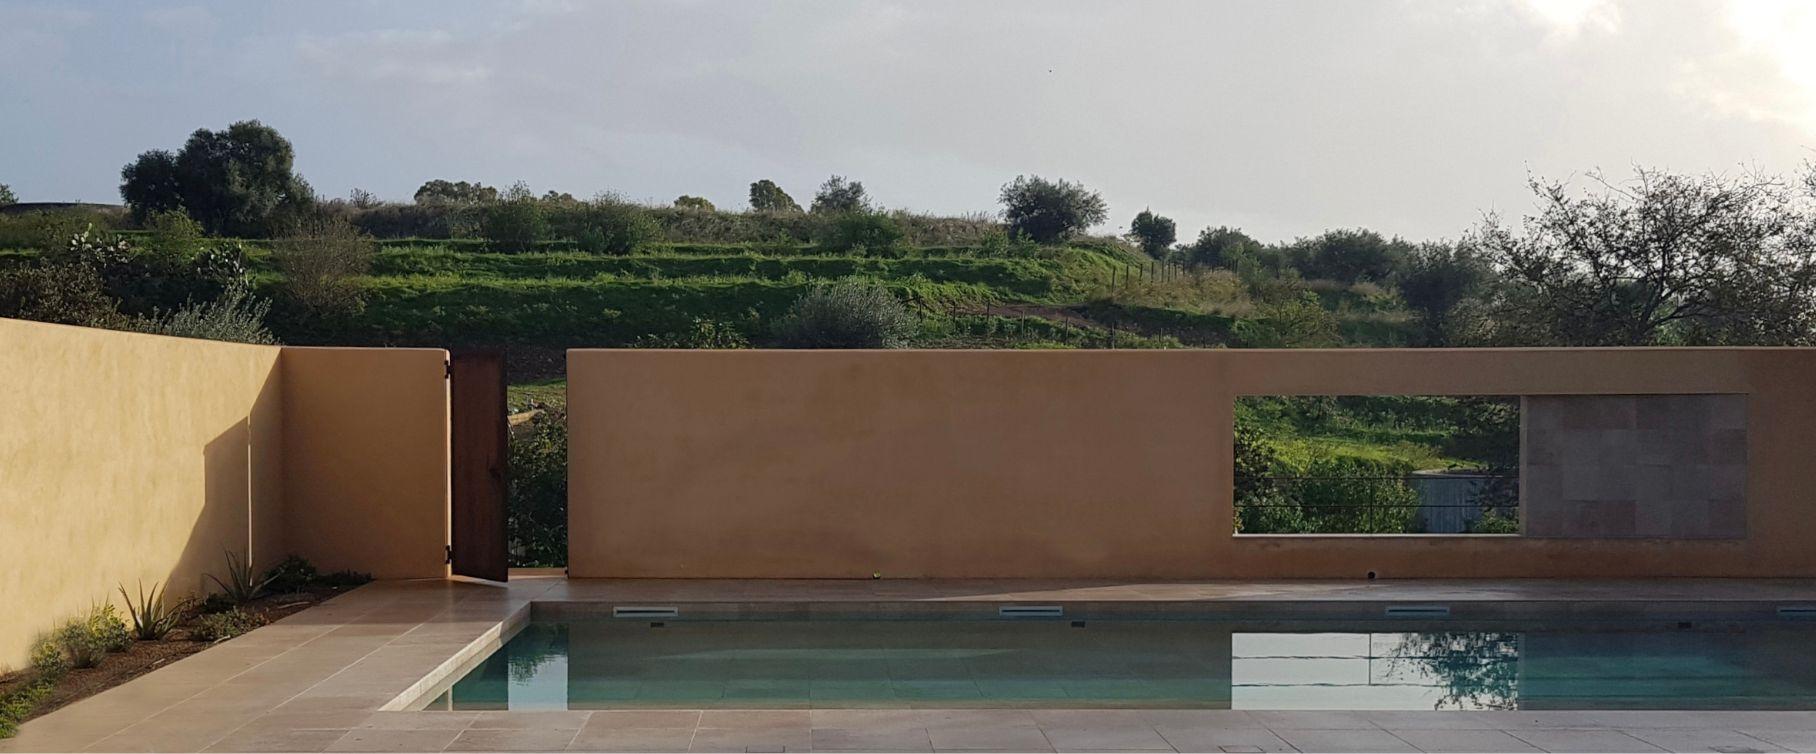 Una piscina nel paesaggio-1 | Casalgrande Padana